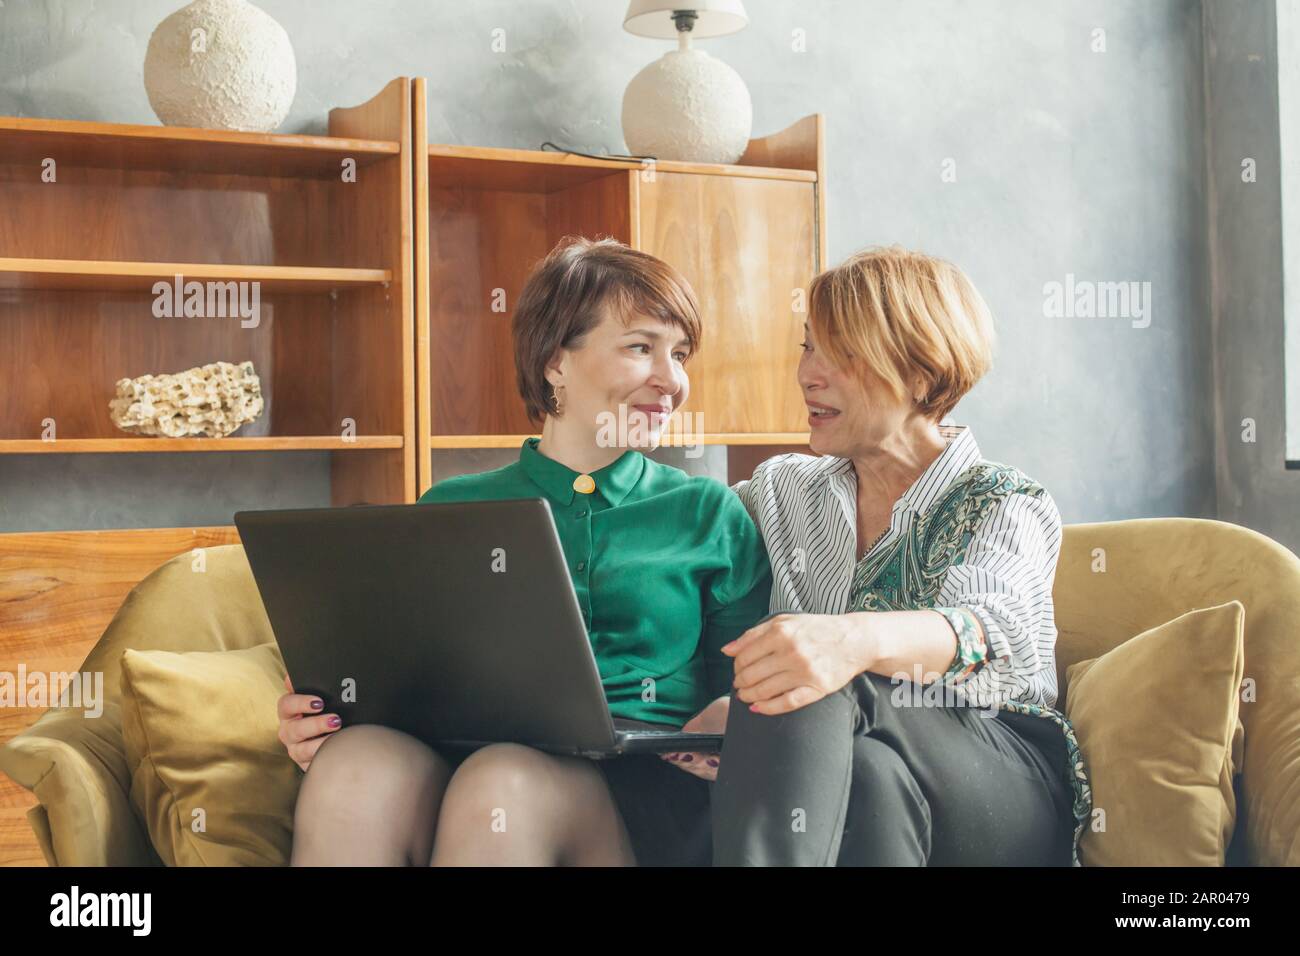 Glückliche, reife Frauen, die zu Hause mit einem Laptop chatten und  arbeiten Stockfotografie - Alamy